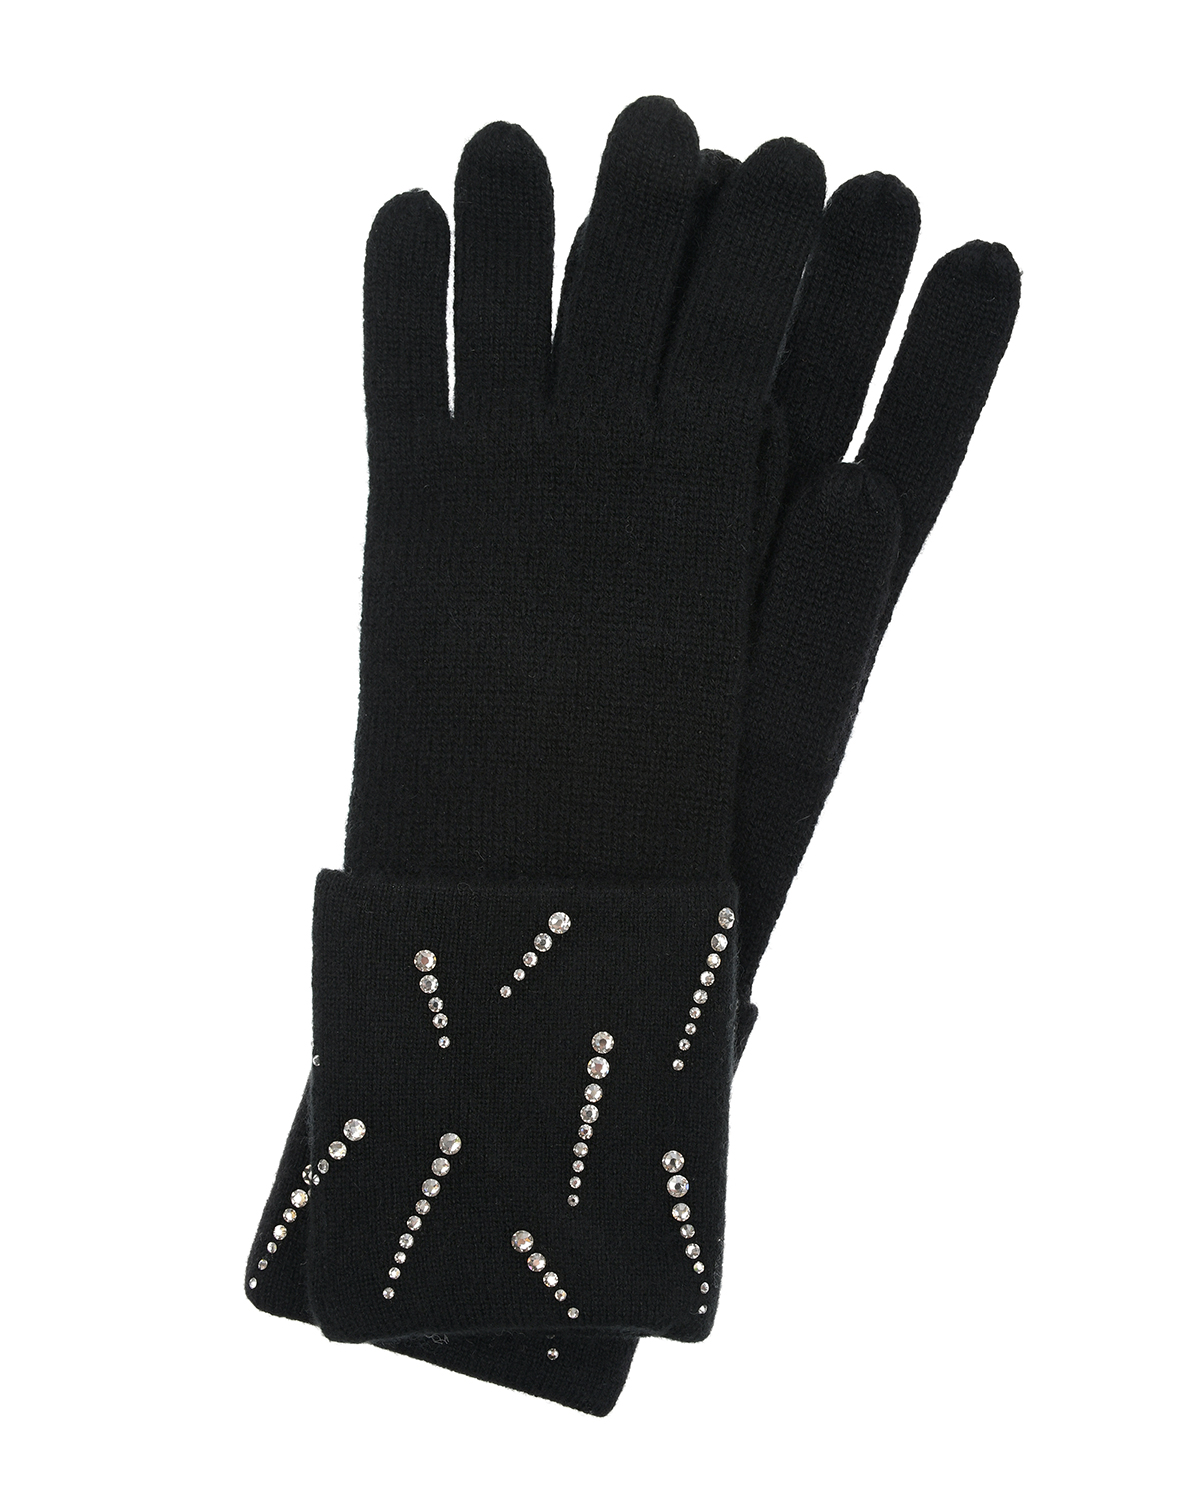 Черные кашемировые перчатки с кристаллами Swarovski William Sharp, размер unica, цвет черный